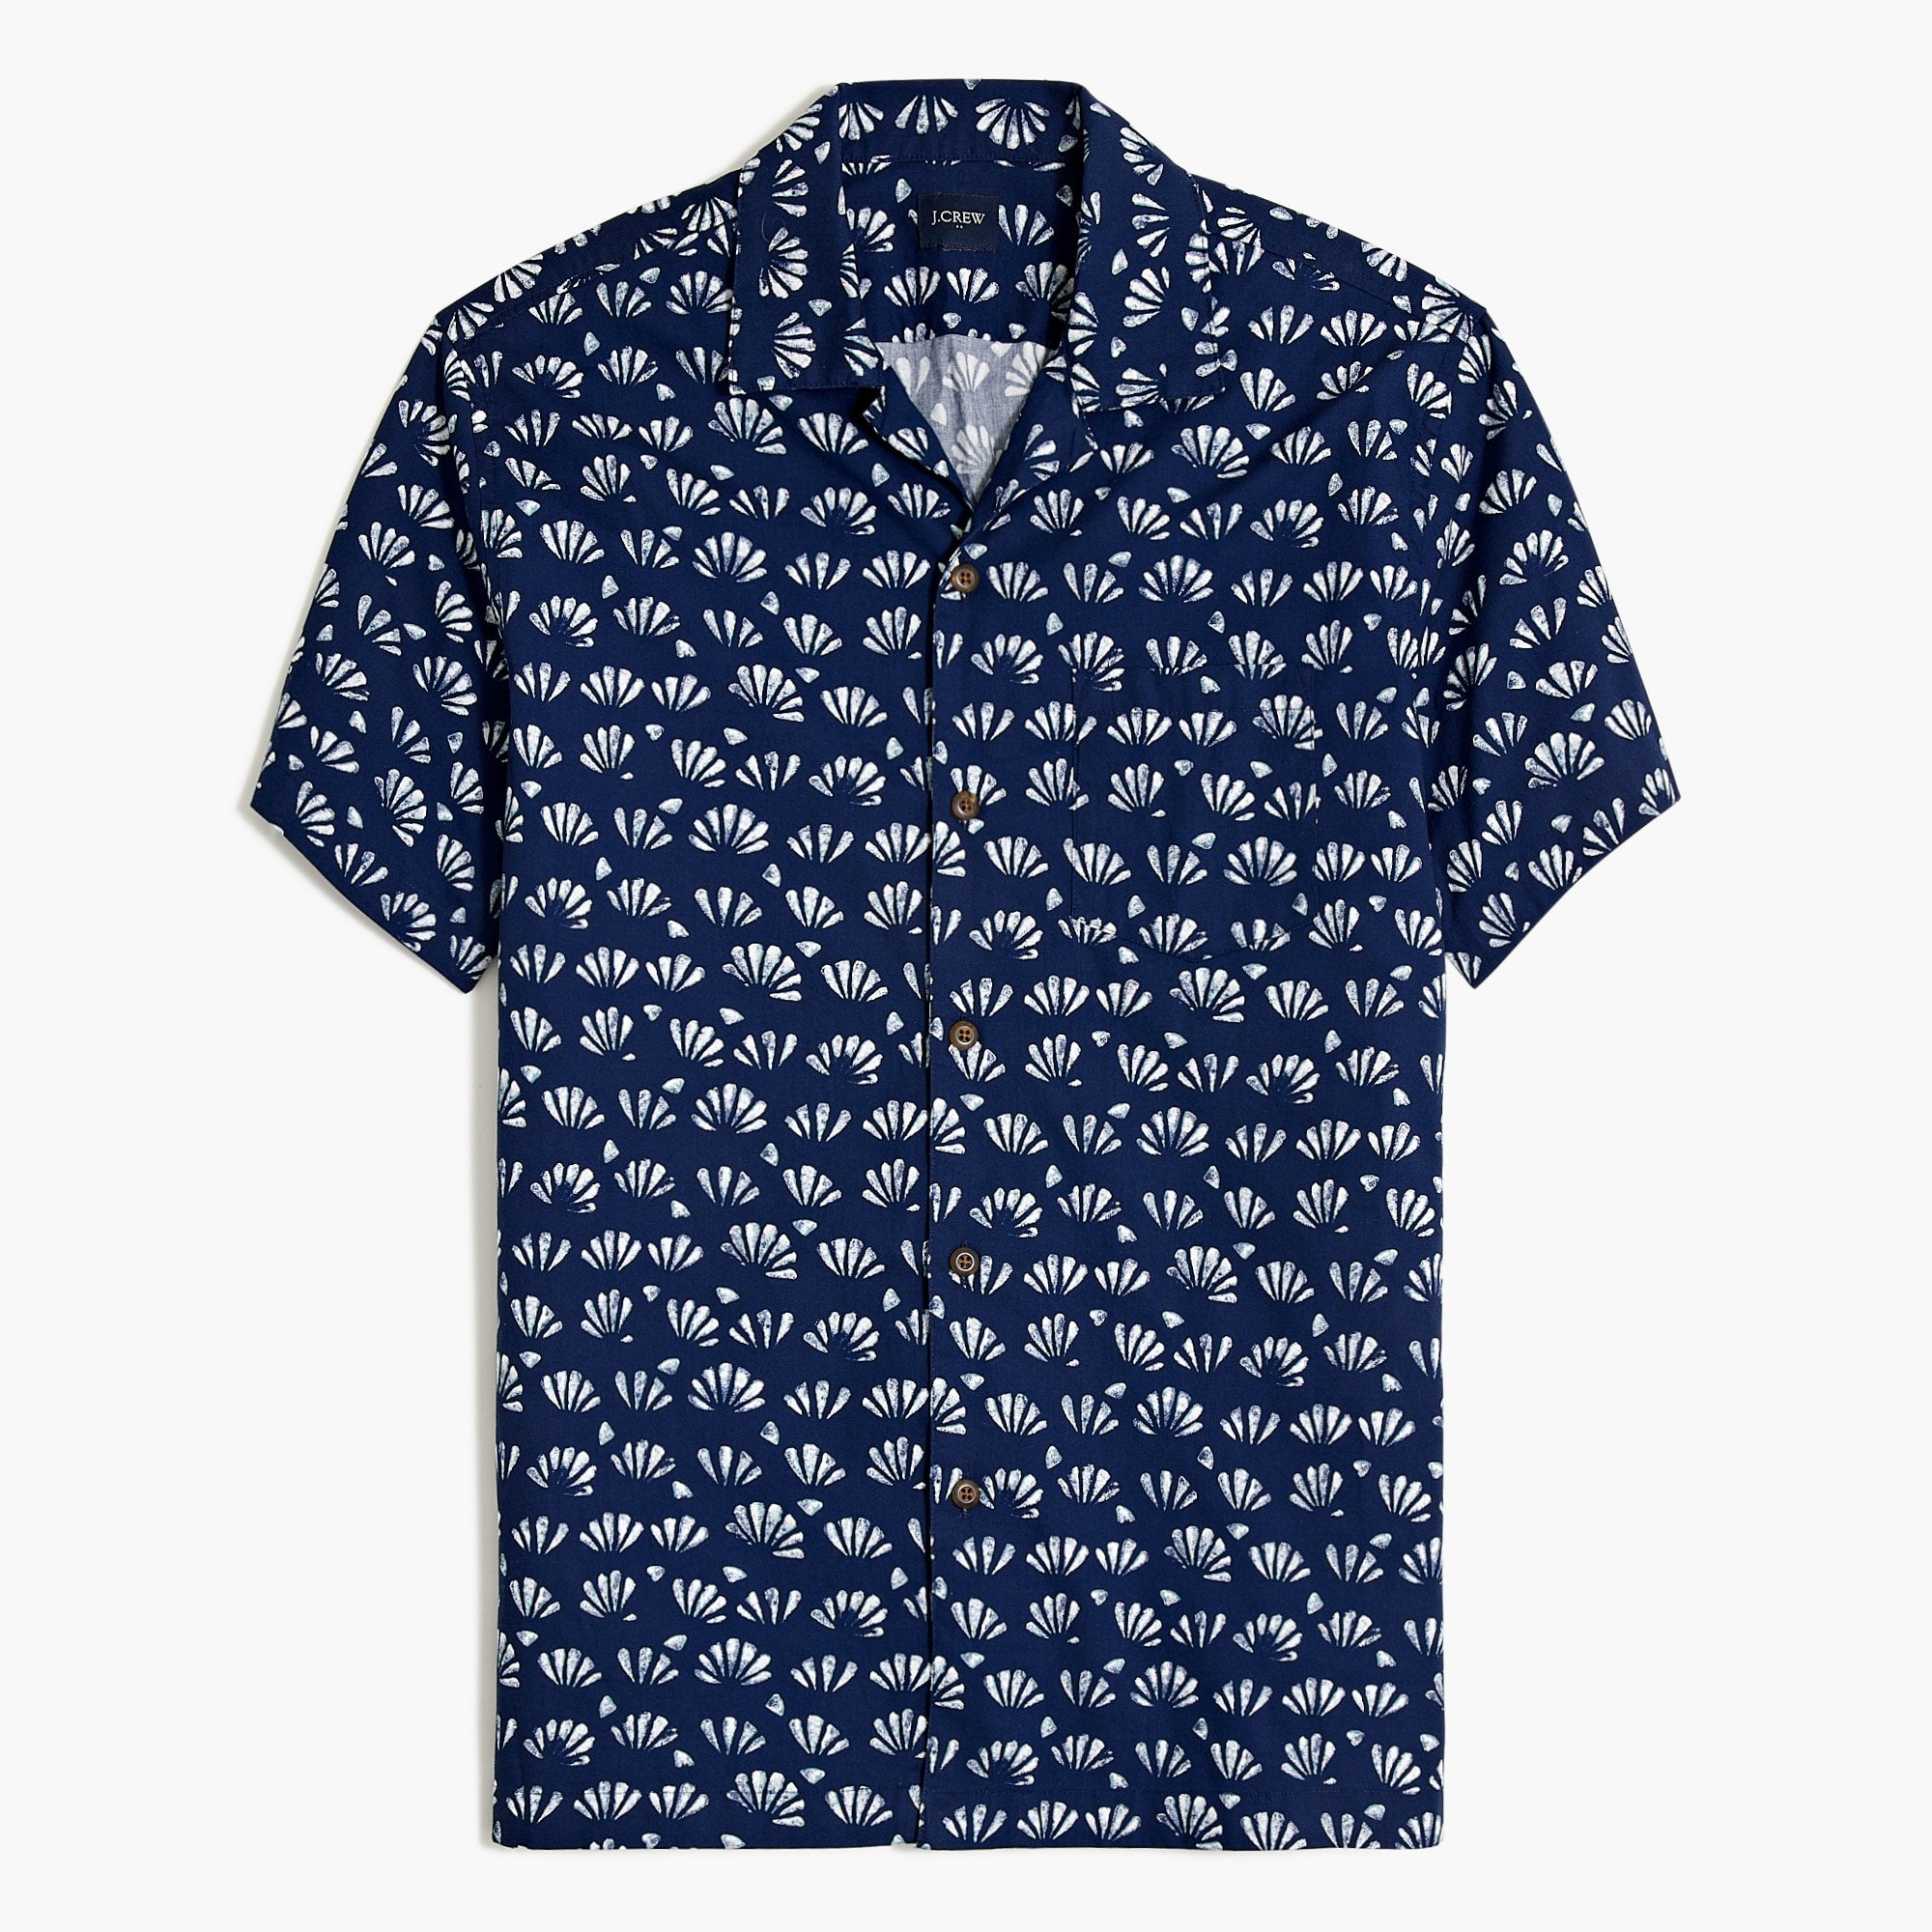 mens Short-sleeve printed camp shirt